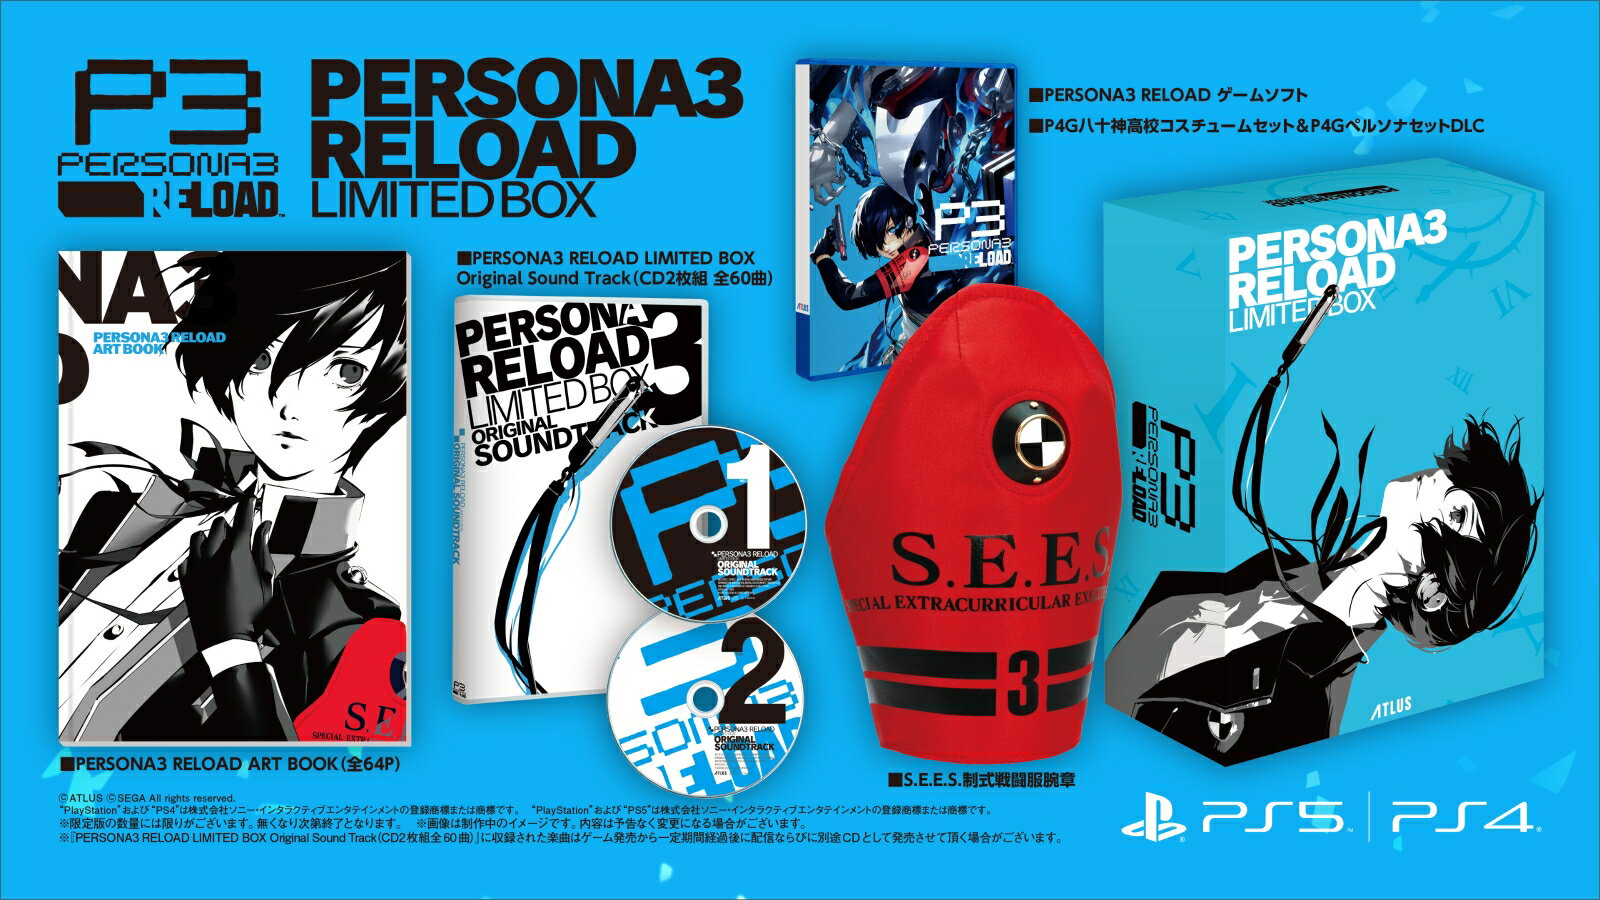 【楽天ブックス限定特典+特典】PERSONA3 RELOAD LIMITED BOX PS5版(マフラータオル+【早期購入封入特典】P4GBGMセット)